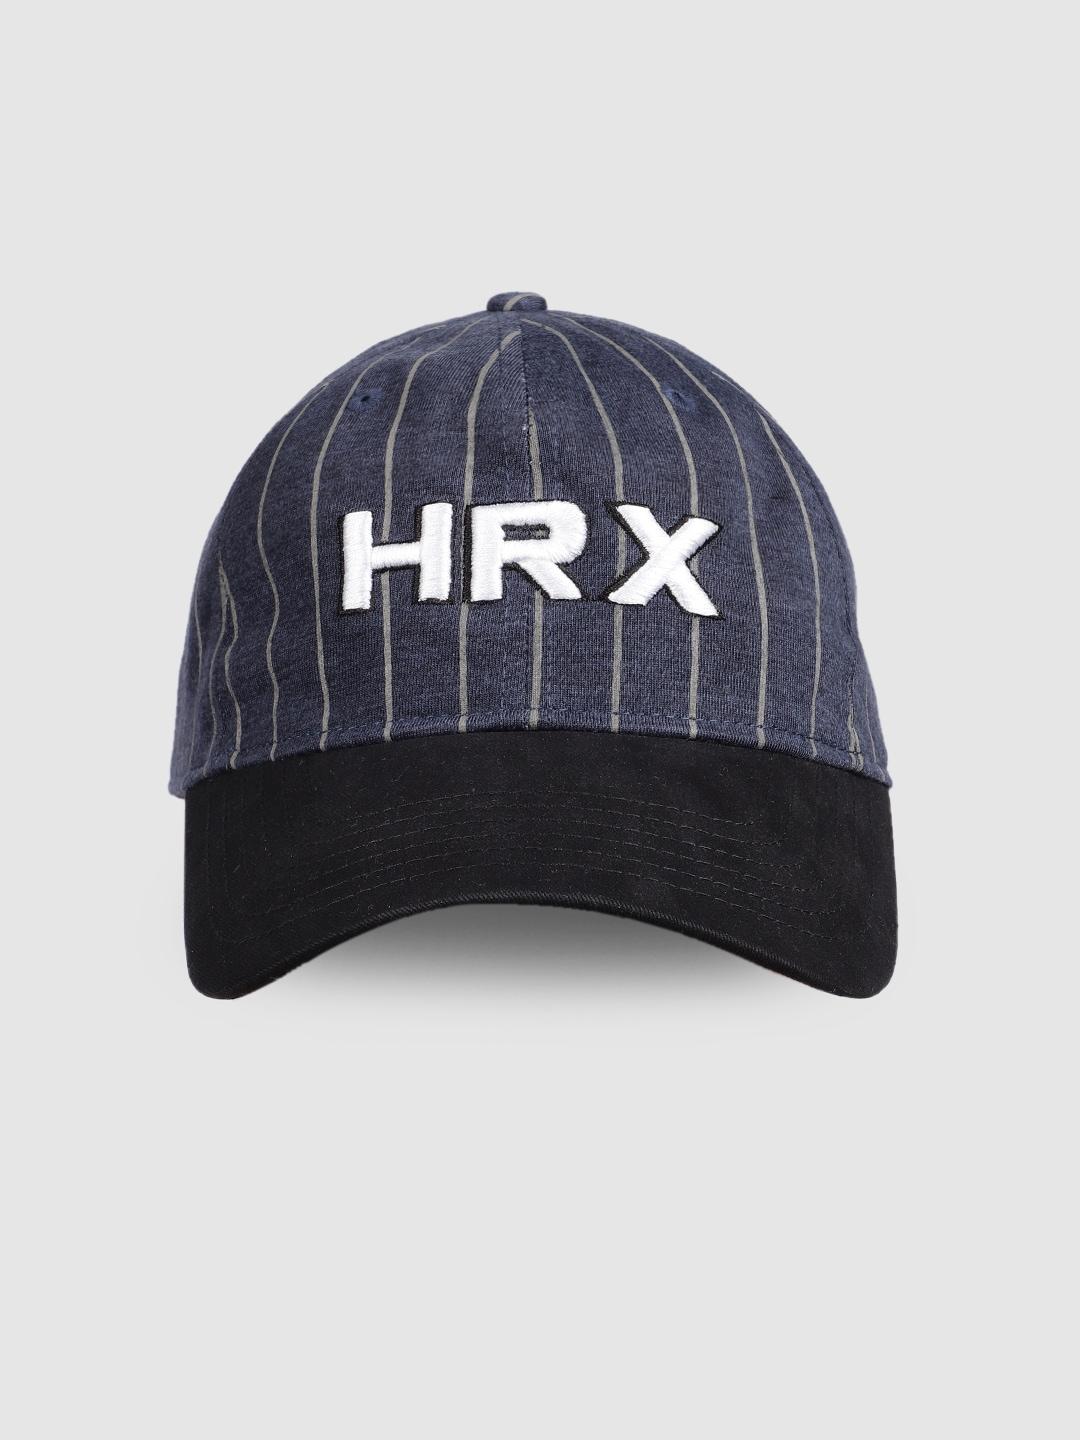 hrx by hrithik roshan unisex black & blue embroidered baseball cap